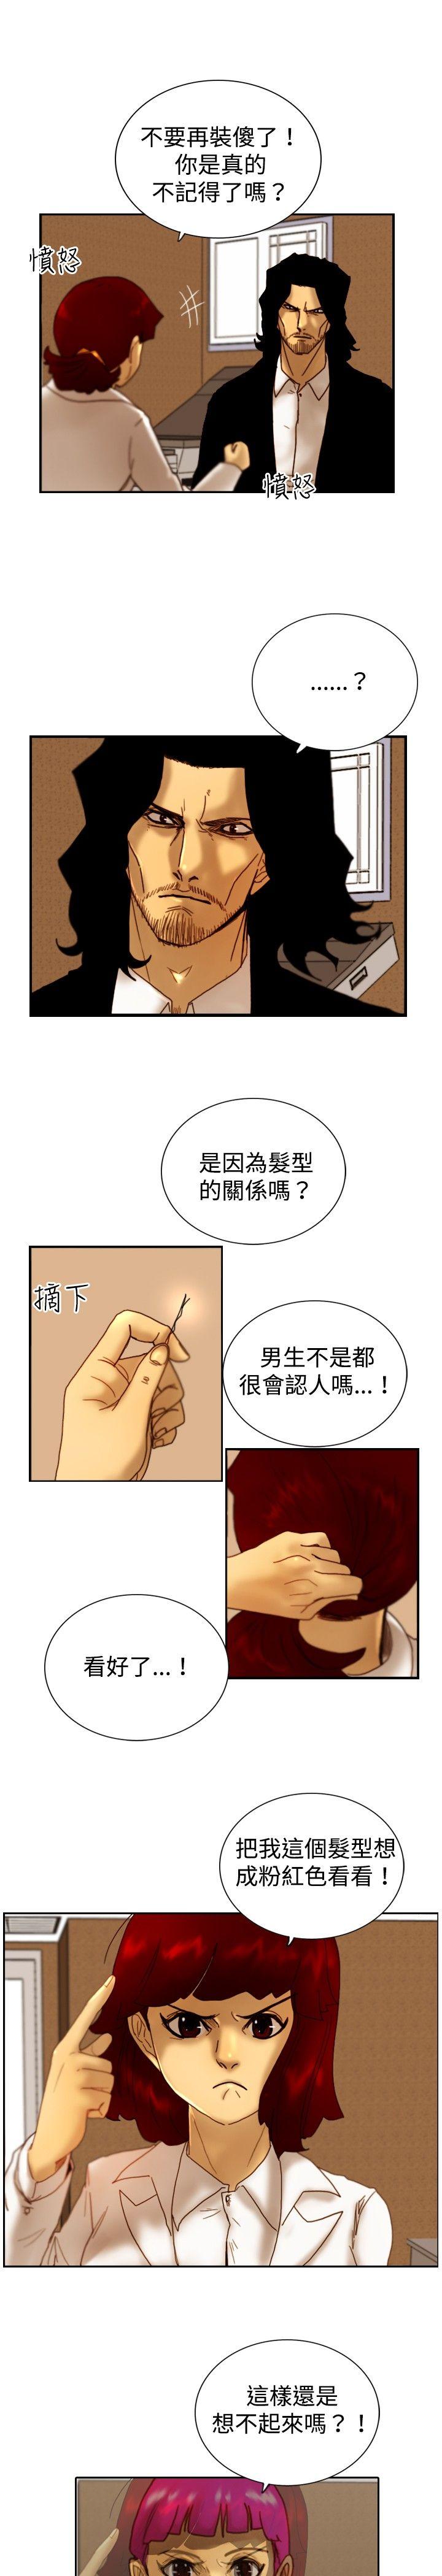 觉醒(完结)  第14话作战-2 漫画图片7.jpg